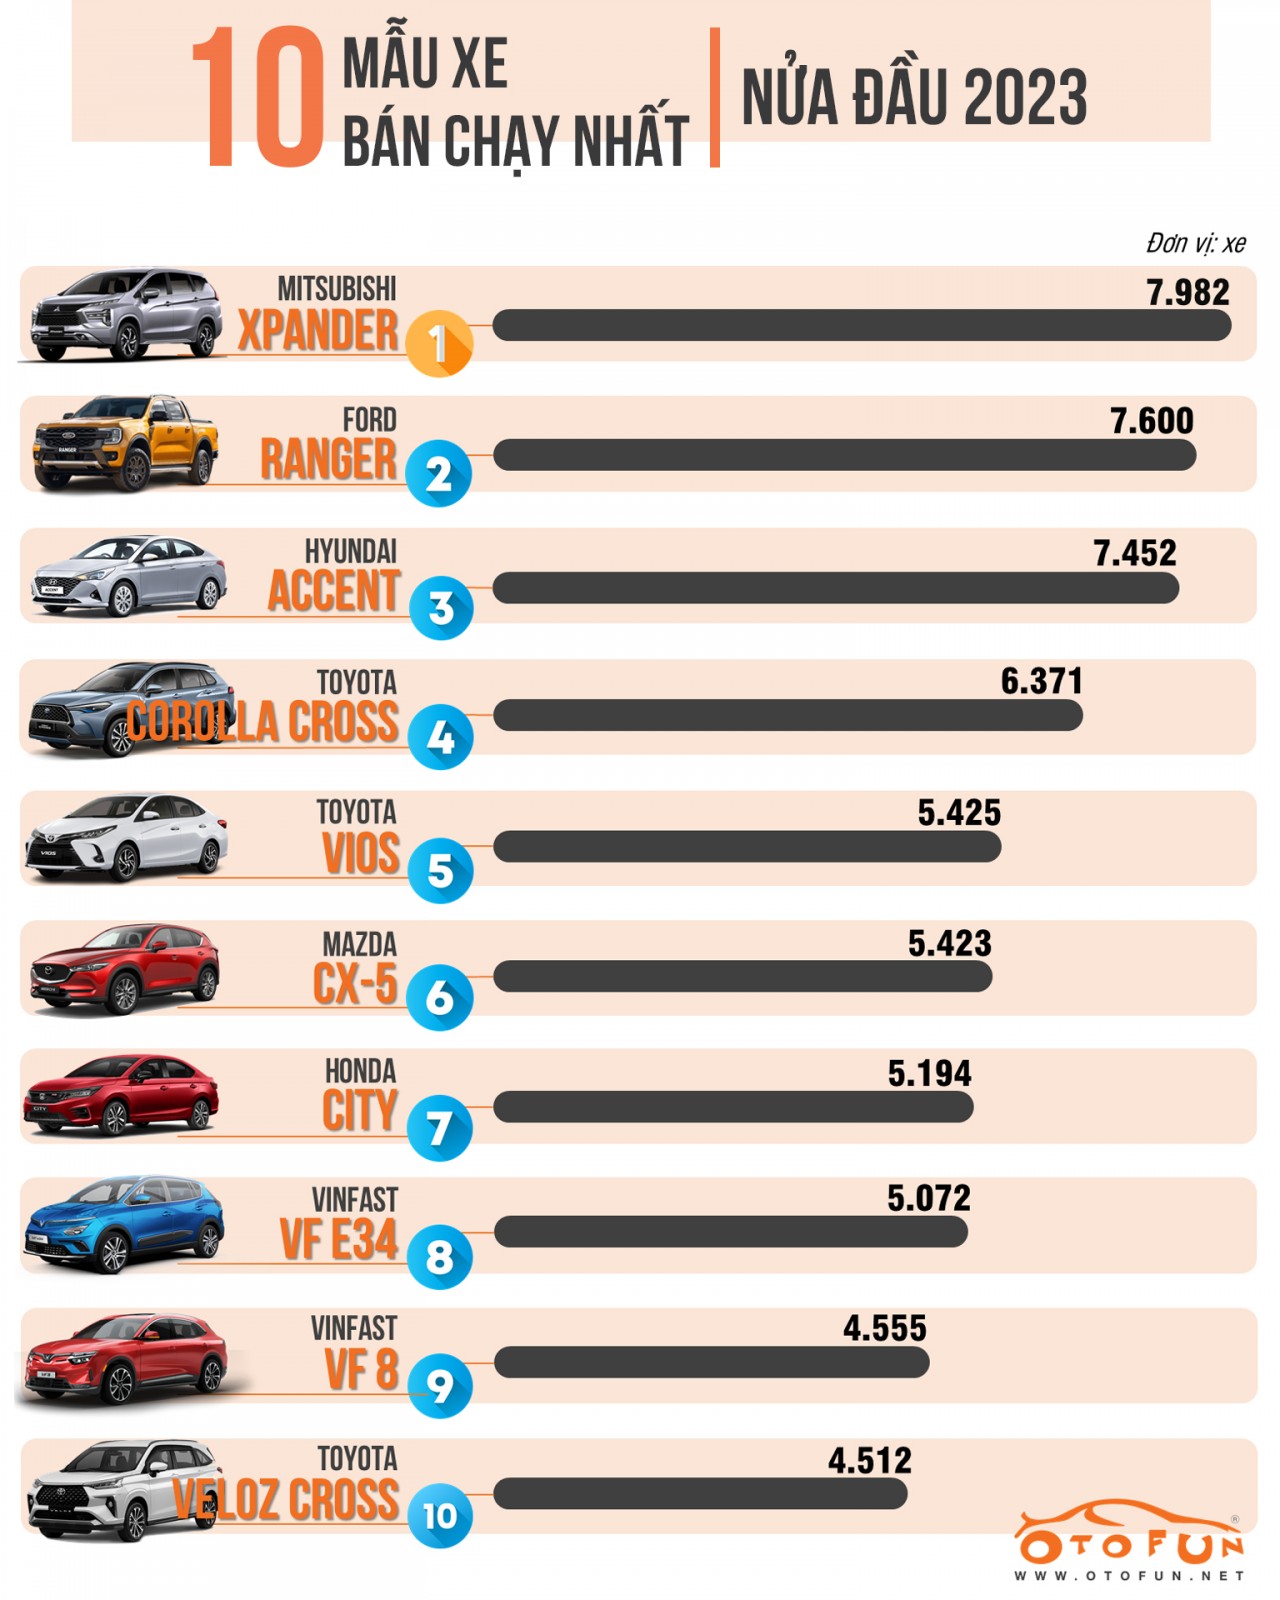 [Infographic] Xe bán chạy nhất nửa đầu năm 2023 gọi tên Mitsubishi Xpander